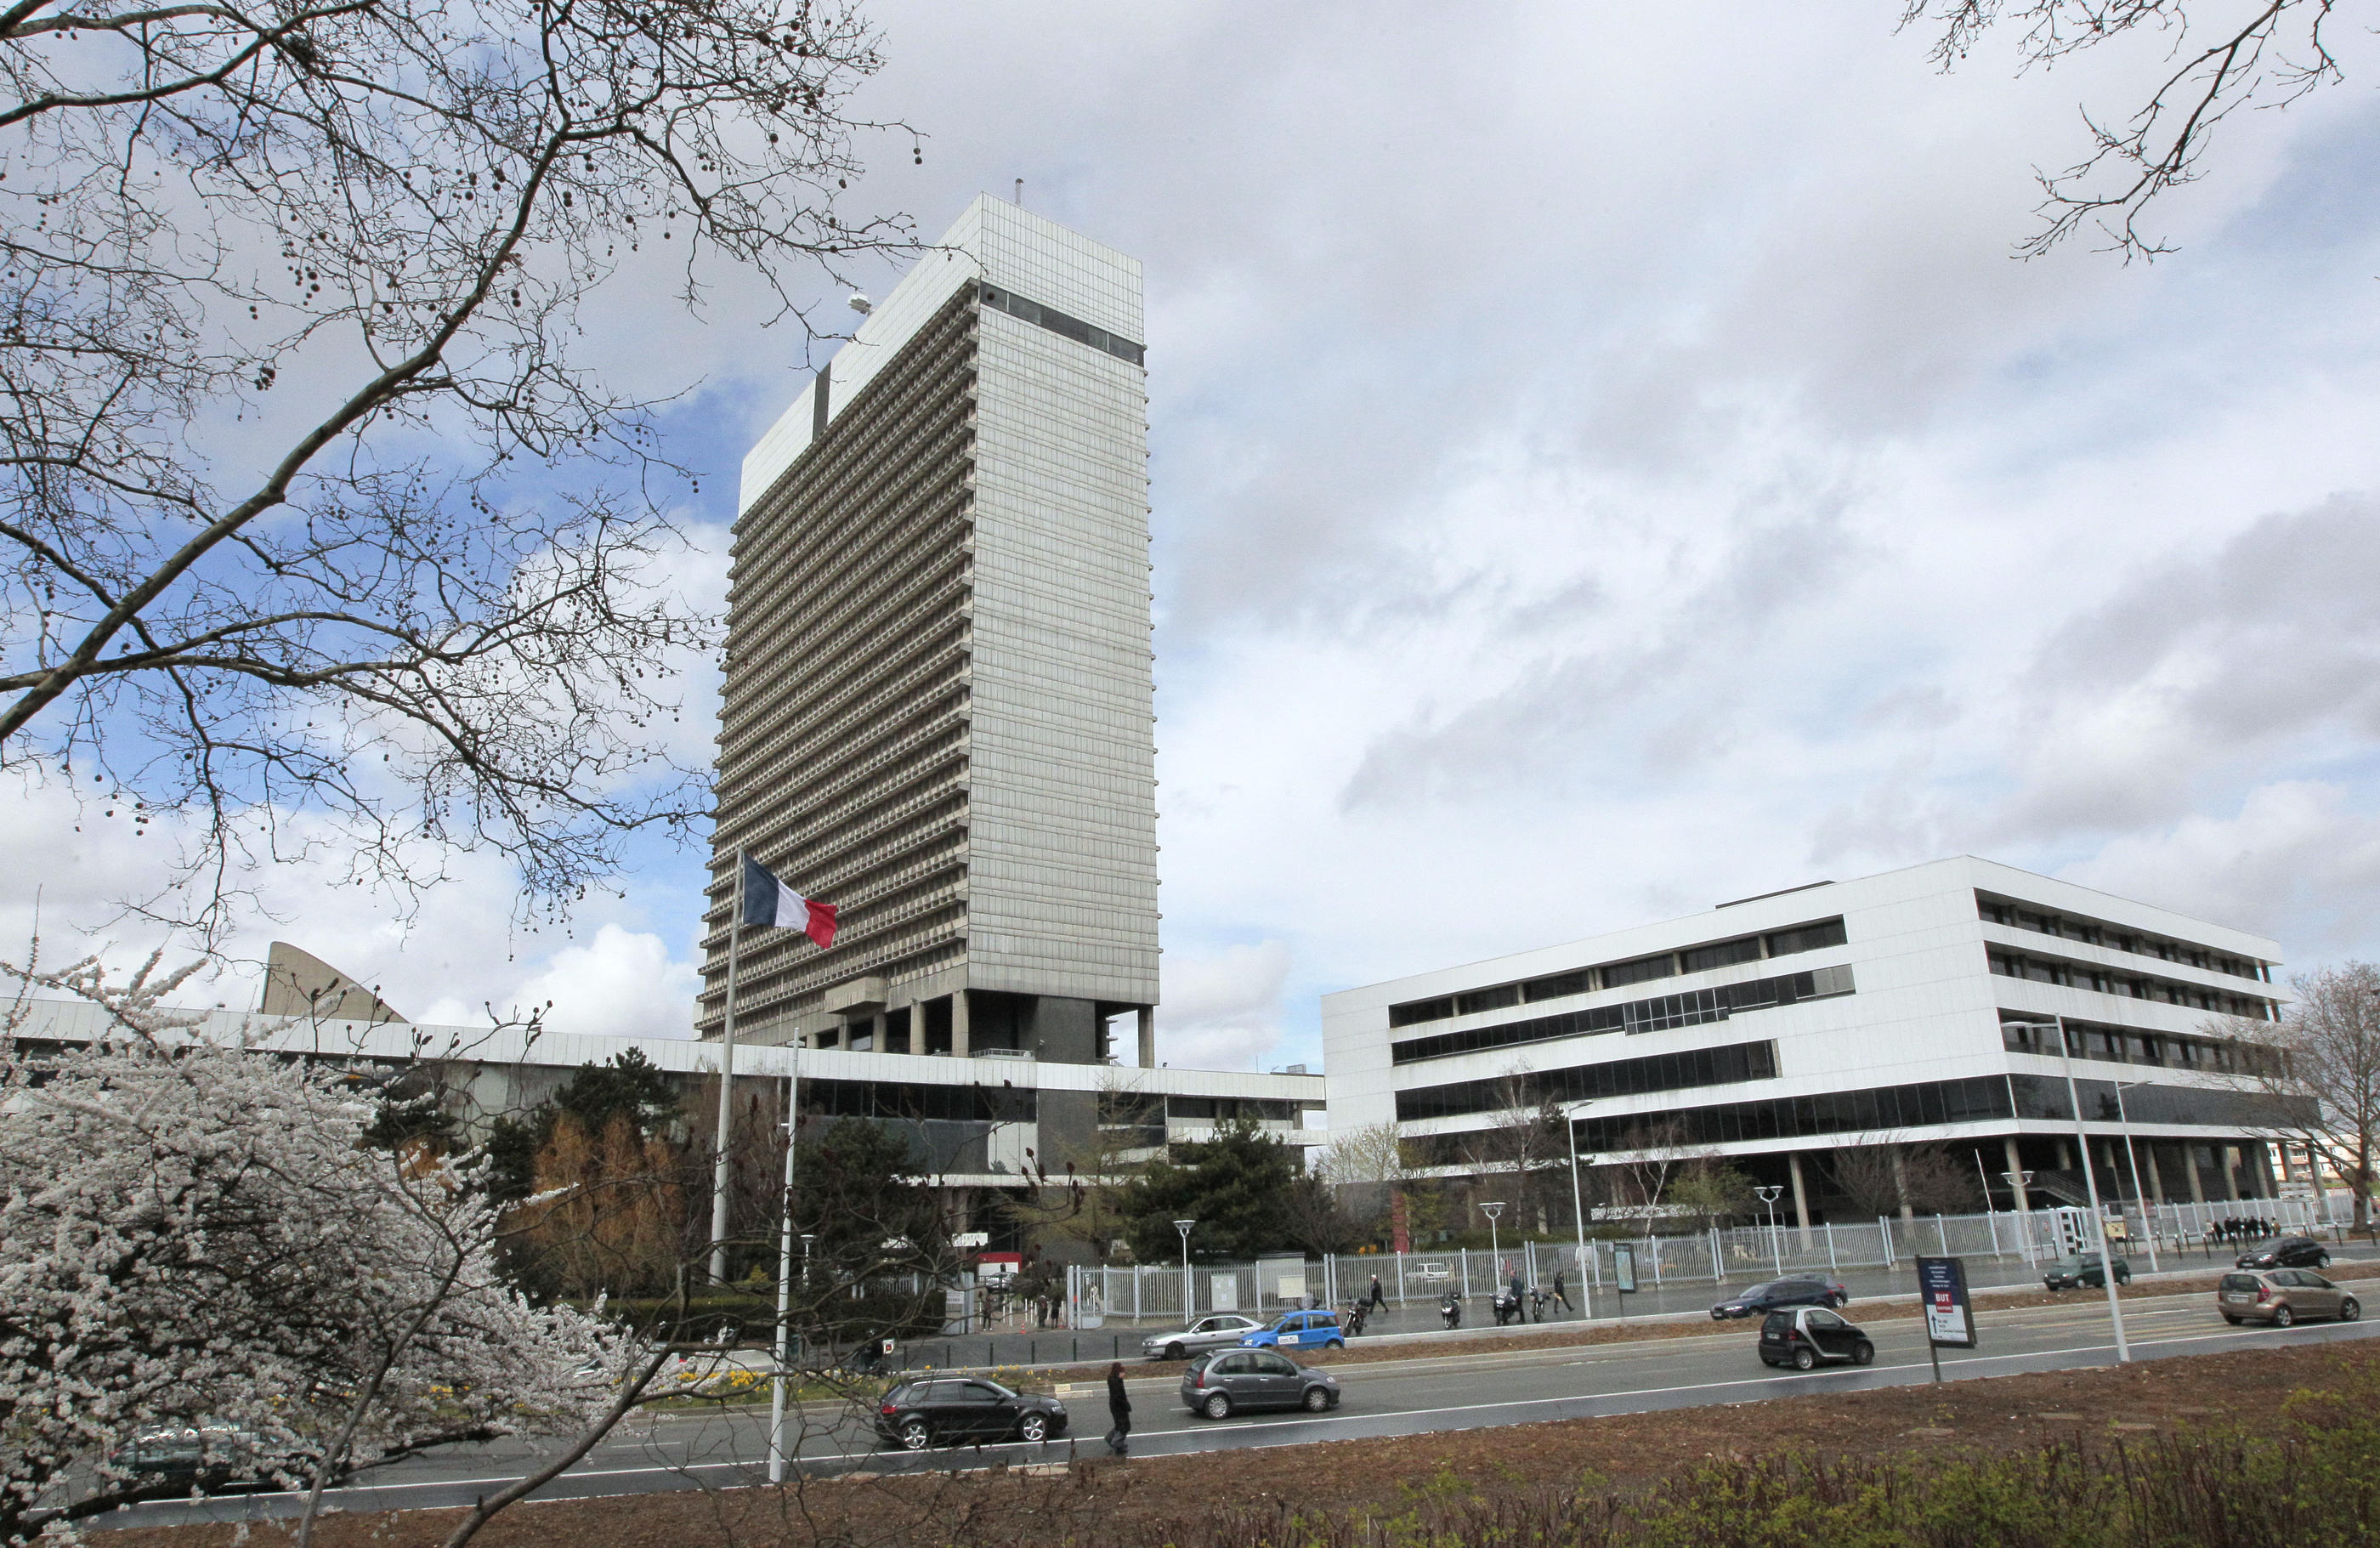 La tour de 113 mètres et 25 étages, qui abrite le centre administratif départemental des Hauts-de-Seine, à Nanterre, va être rénovée et agrandie d'un bâtiment supplémentaire. (Archives) AFP/Jacques Demarthon